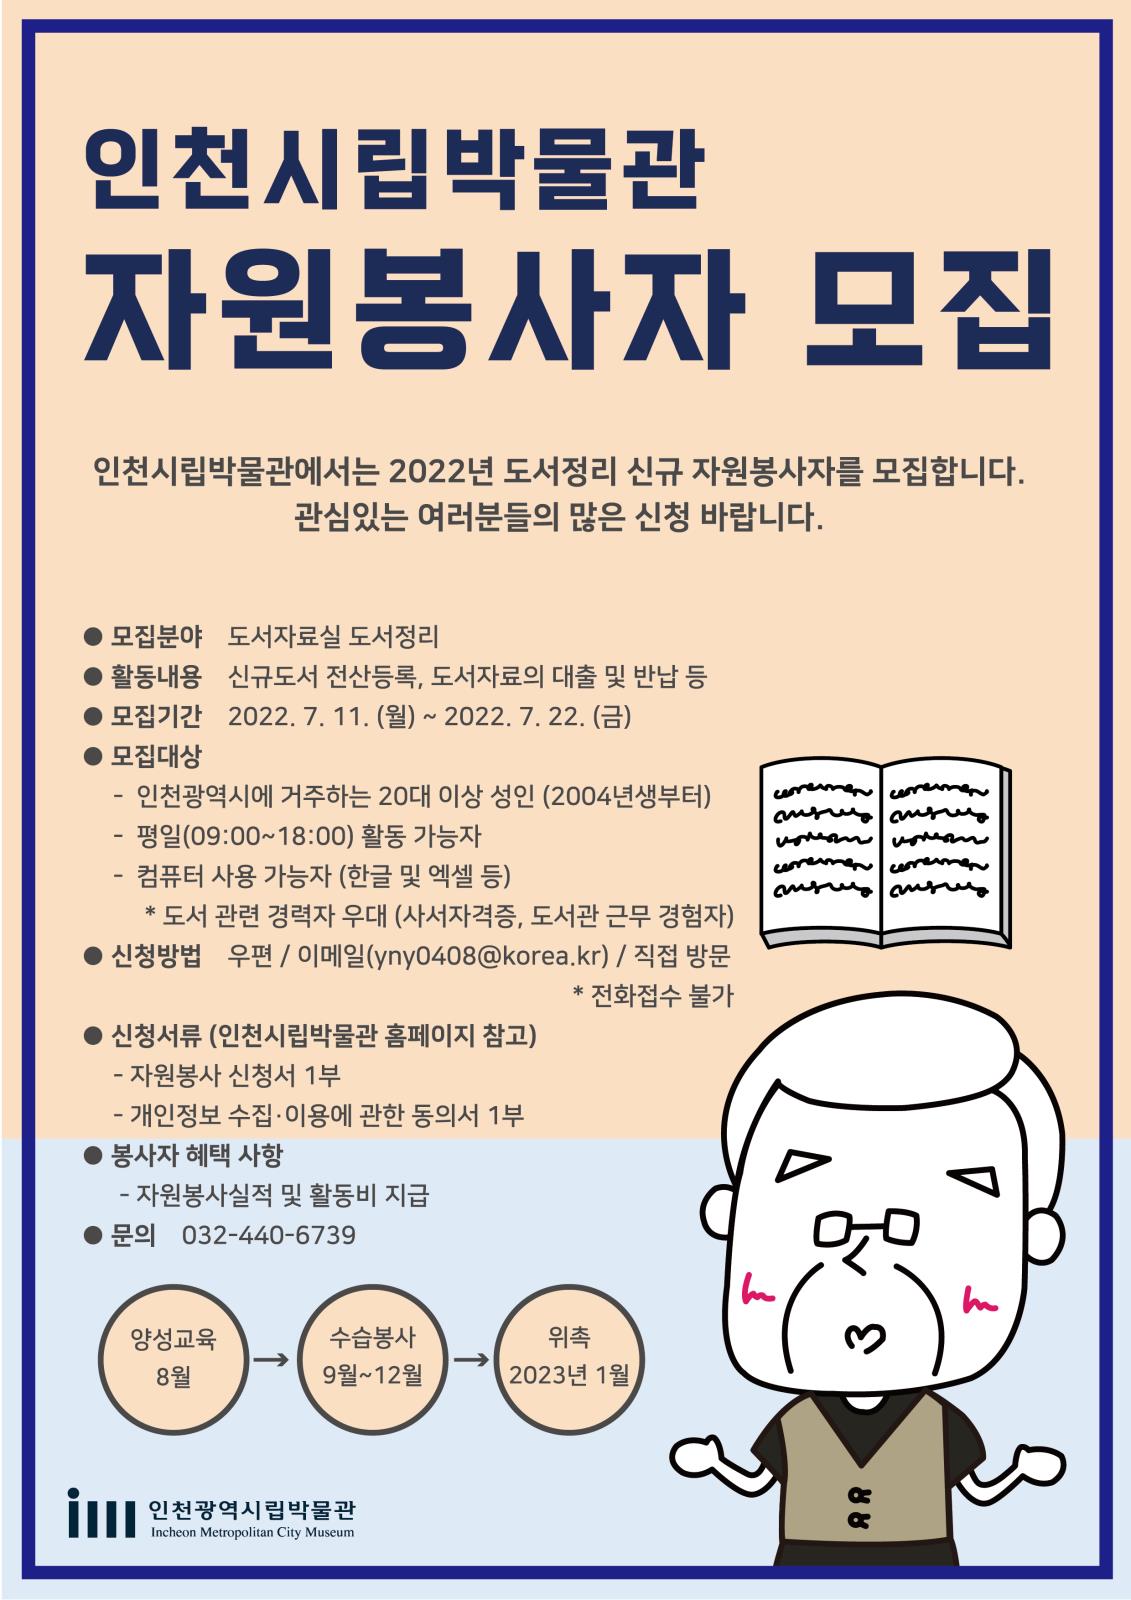 (인천시립박물관) 2022년 인천시립박물관 도서정리 신규 자원봉사자 모집의 1번째 이미지